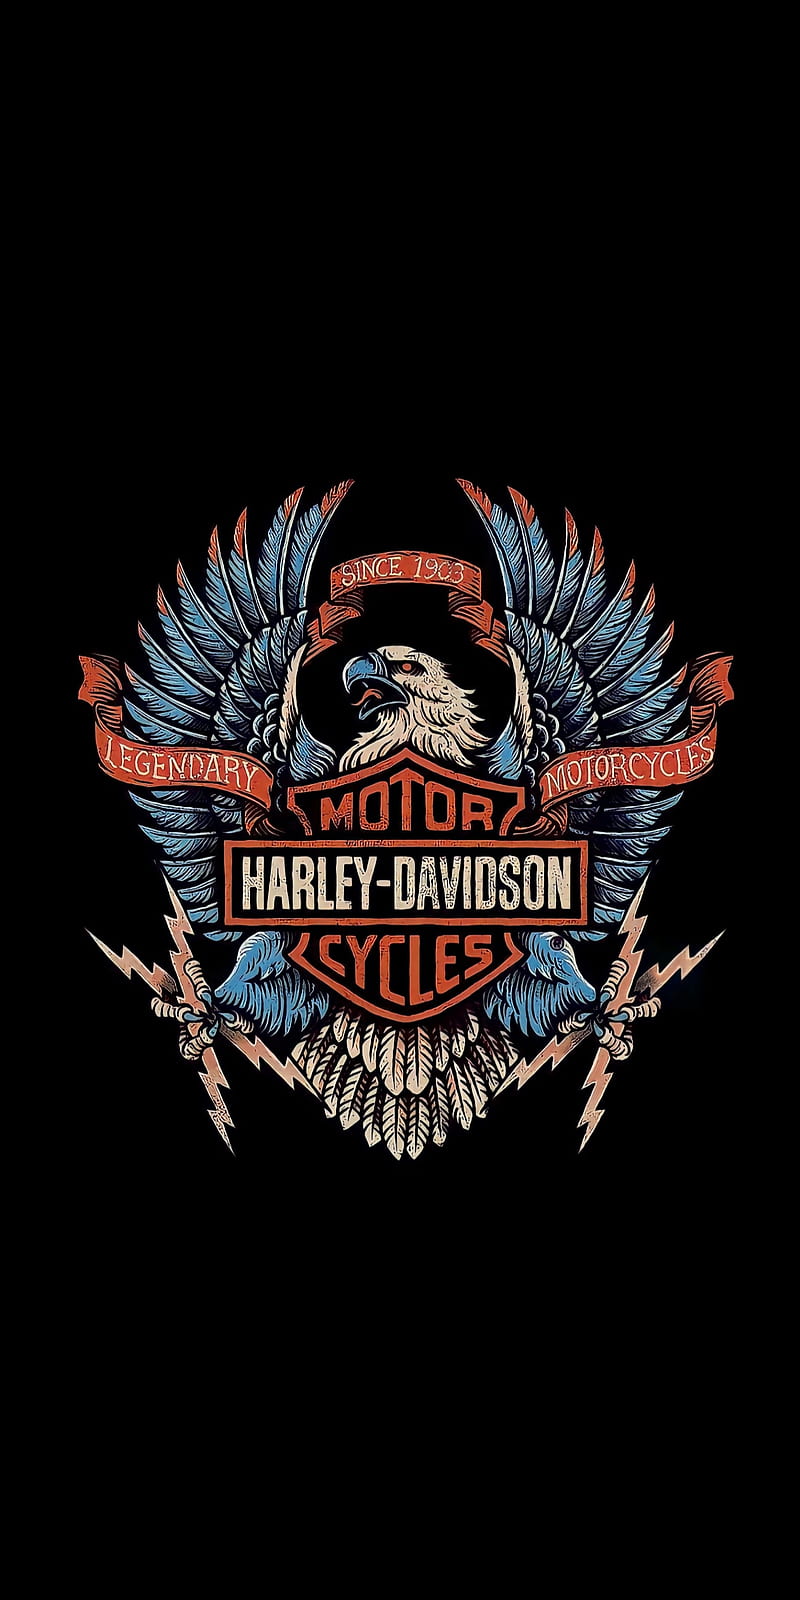 47 Harley Davidson Wallpaper for iPhone  WallpaperSafari